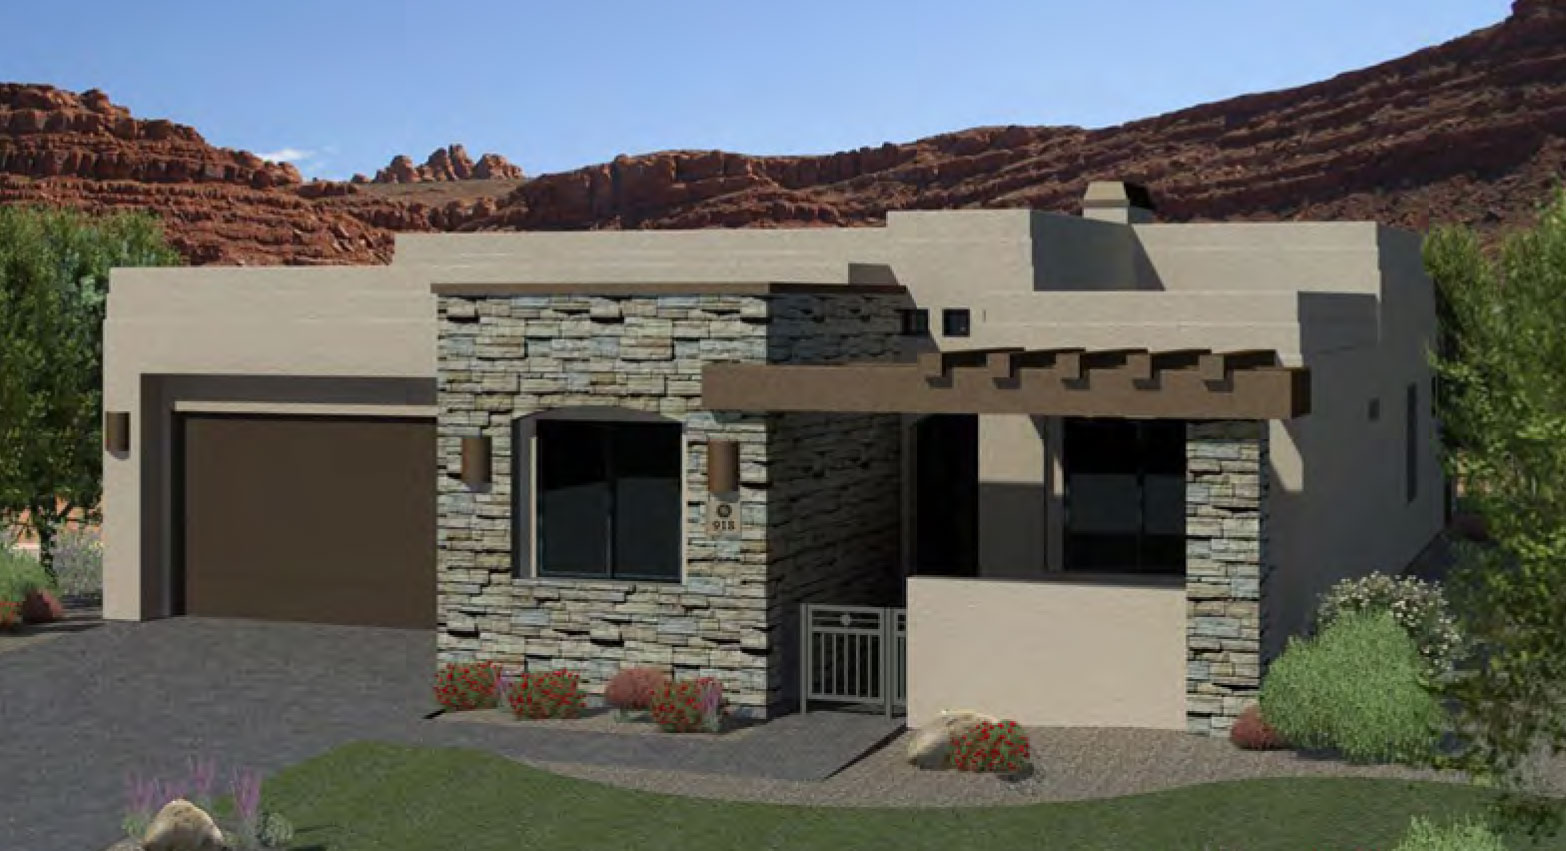 The Augusta New Home Floor Plan in Utah Henry Walker Homes